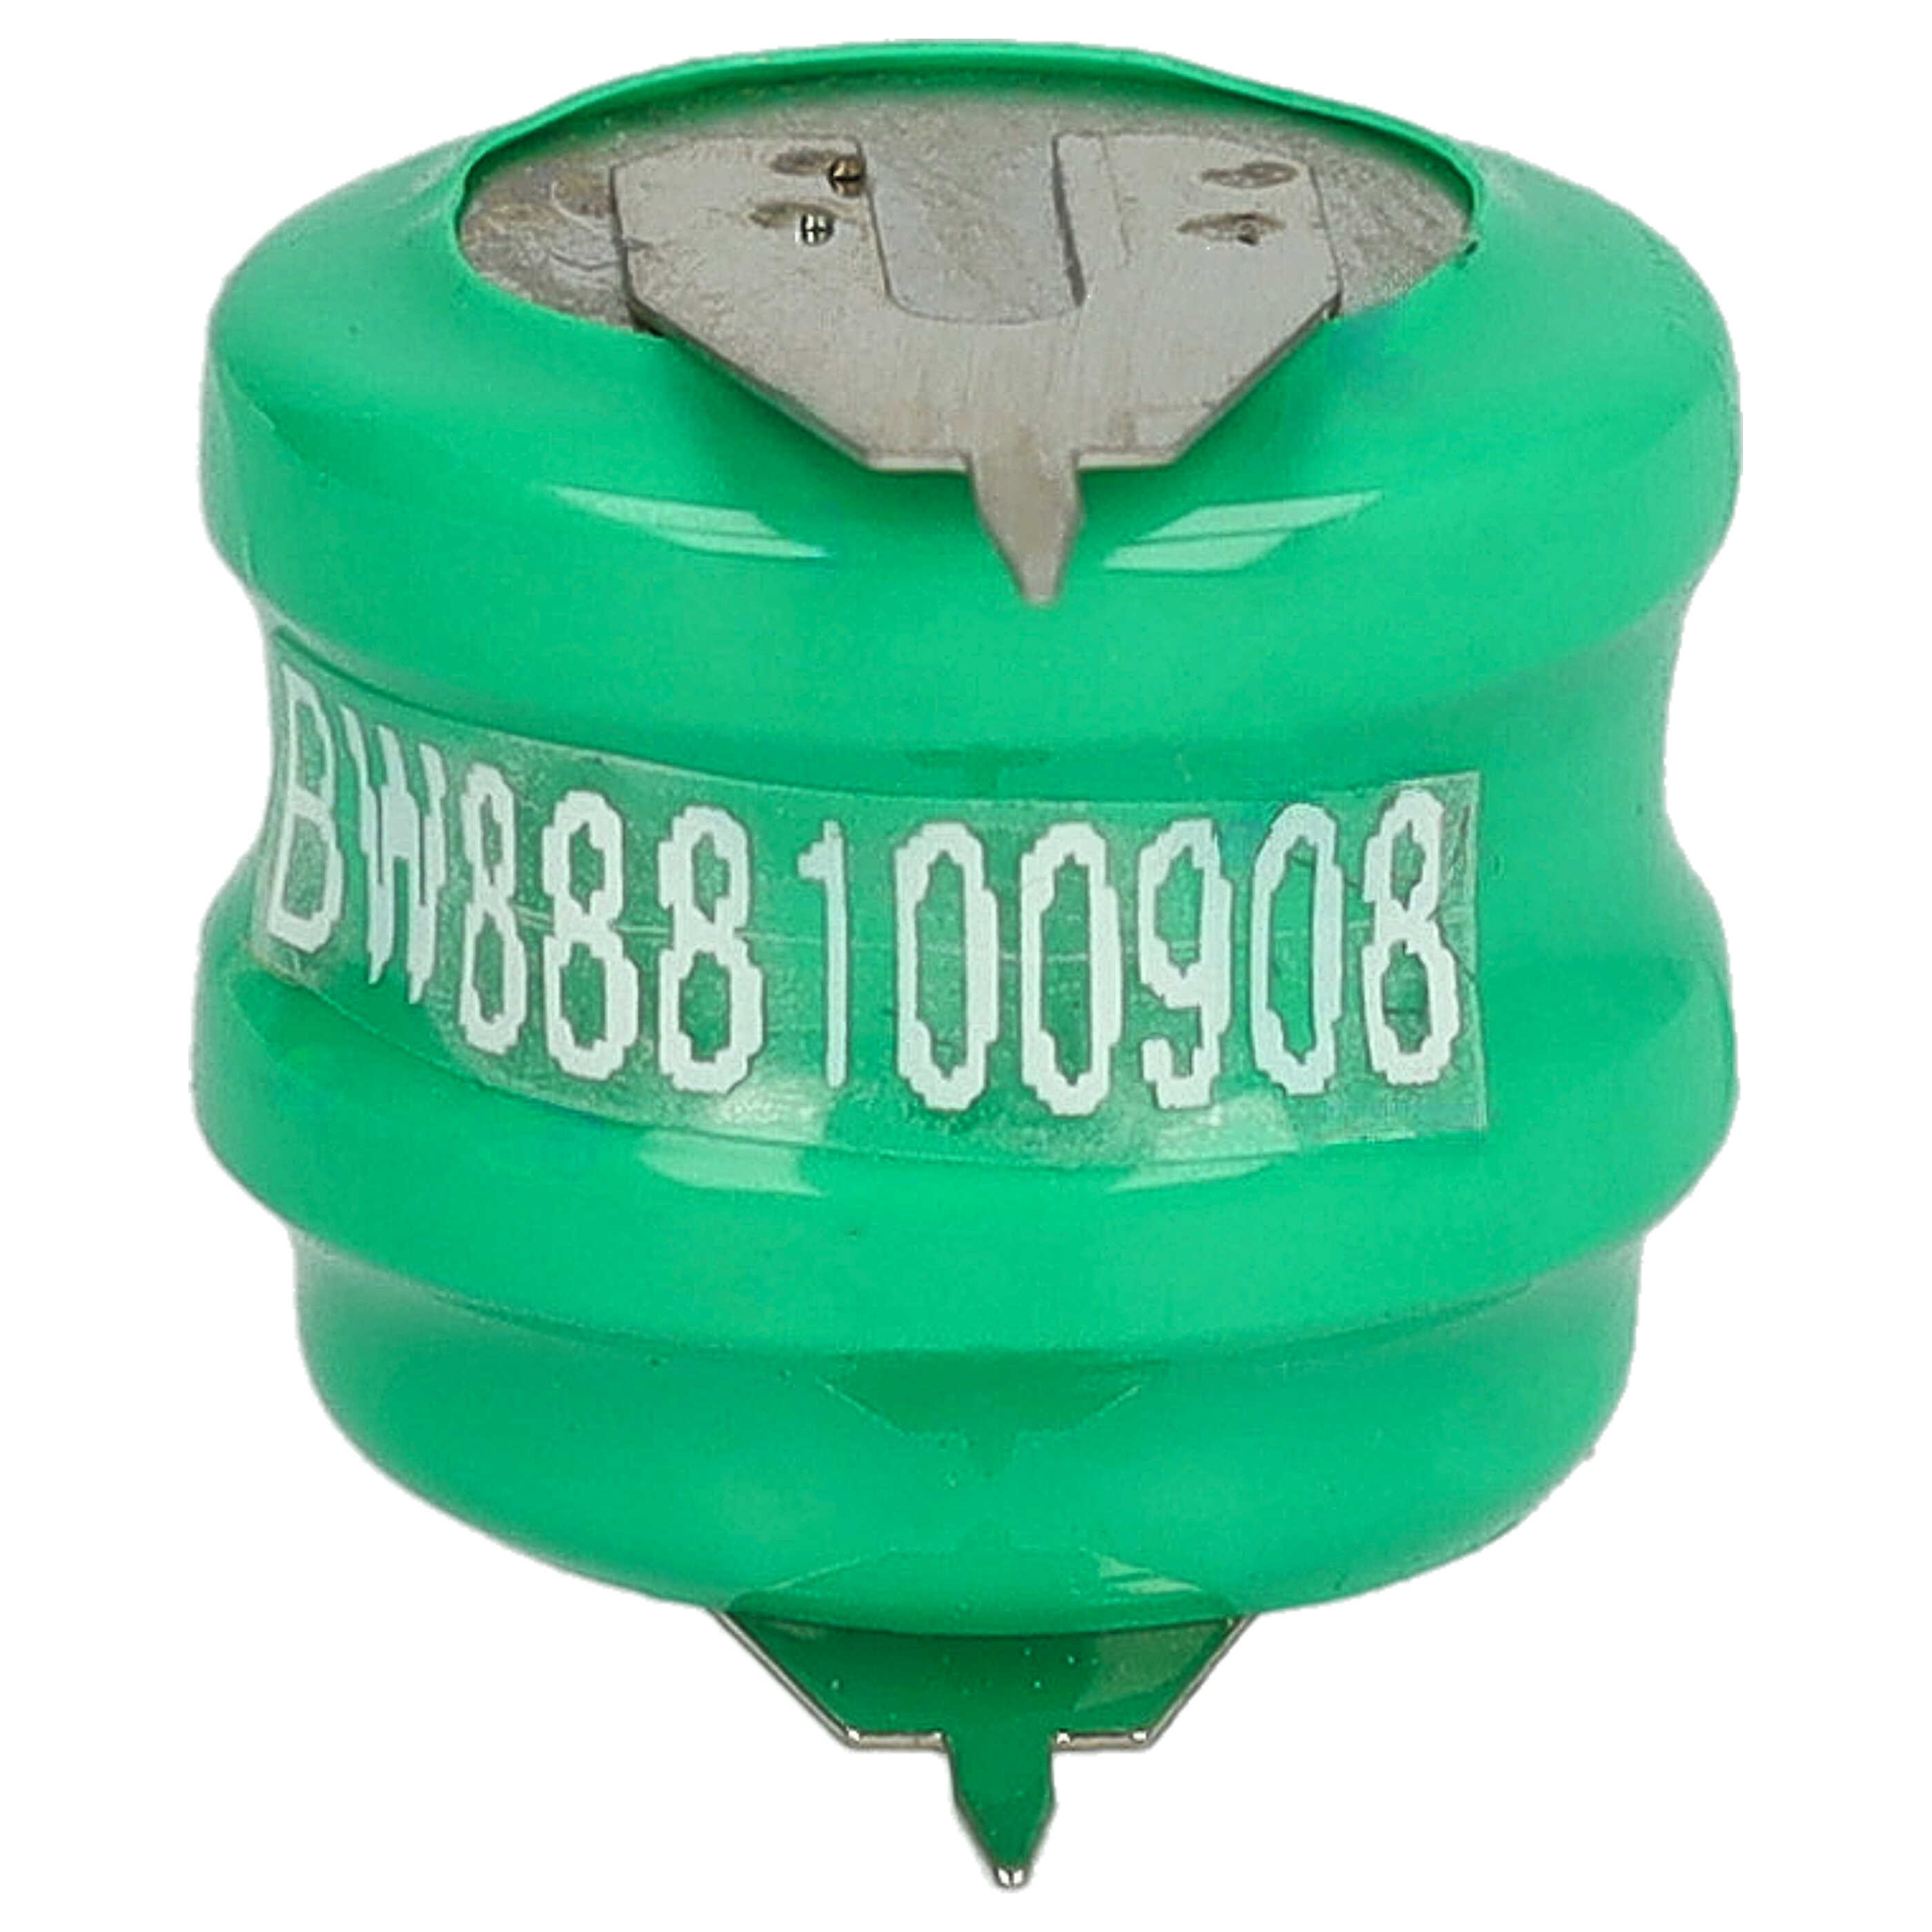 Batteria a bottone (2x cella) tipo V80H 2 pin sostituisce V80H per modellismo, luci solari ecc. 